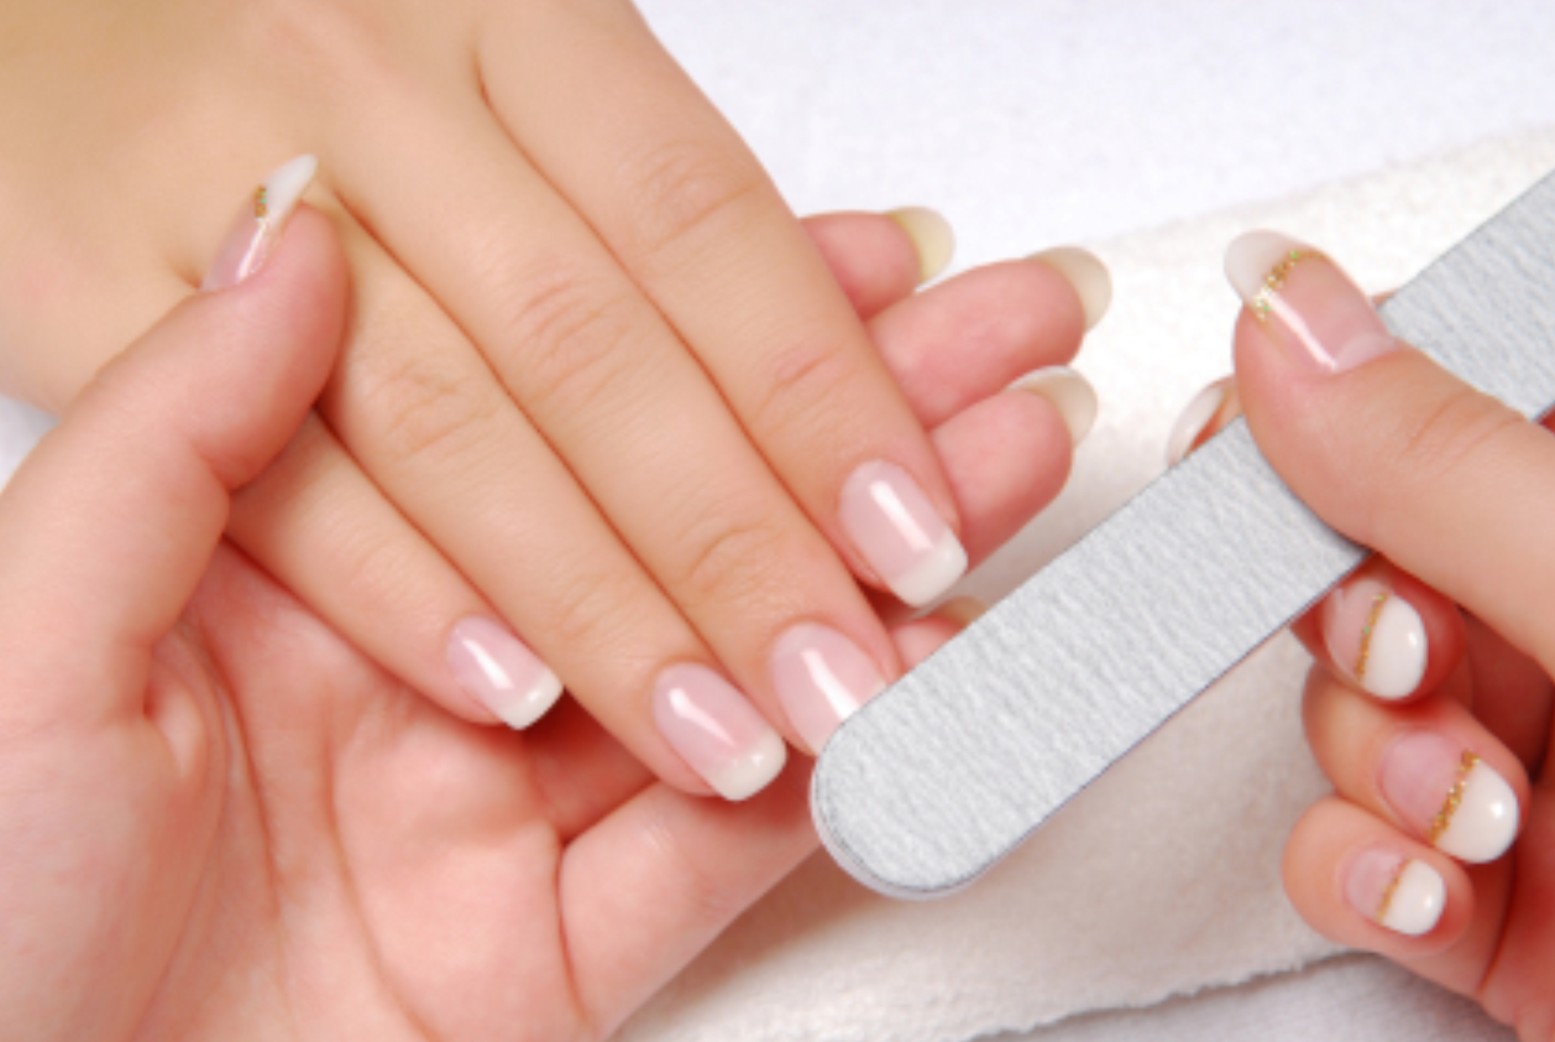 Fabricante Mula Influencia Tips para hacer la manicure si tienes las uñas mordidas - LaPatilla.com